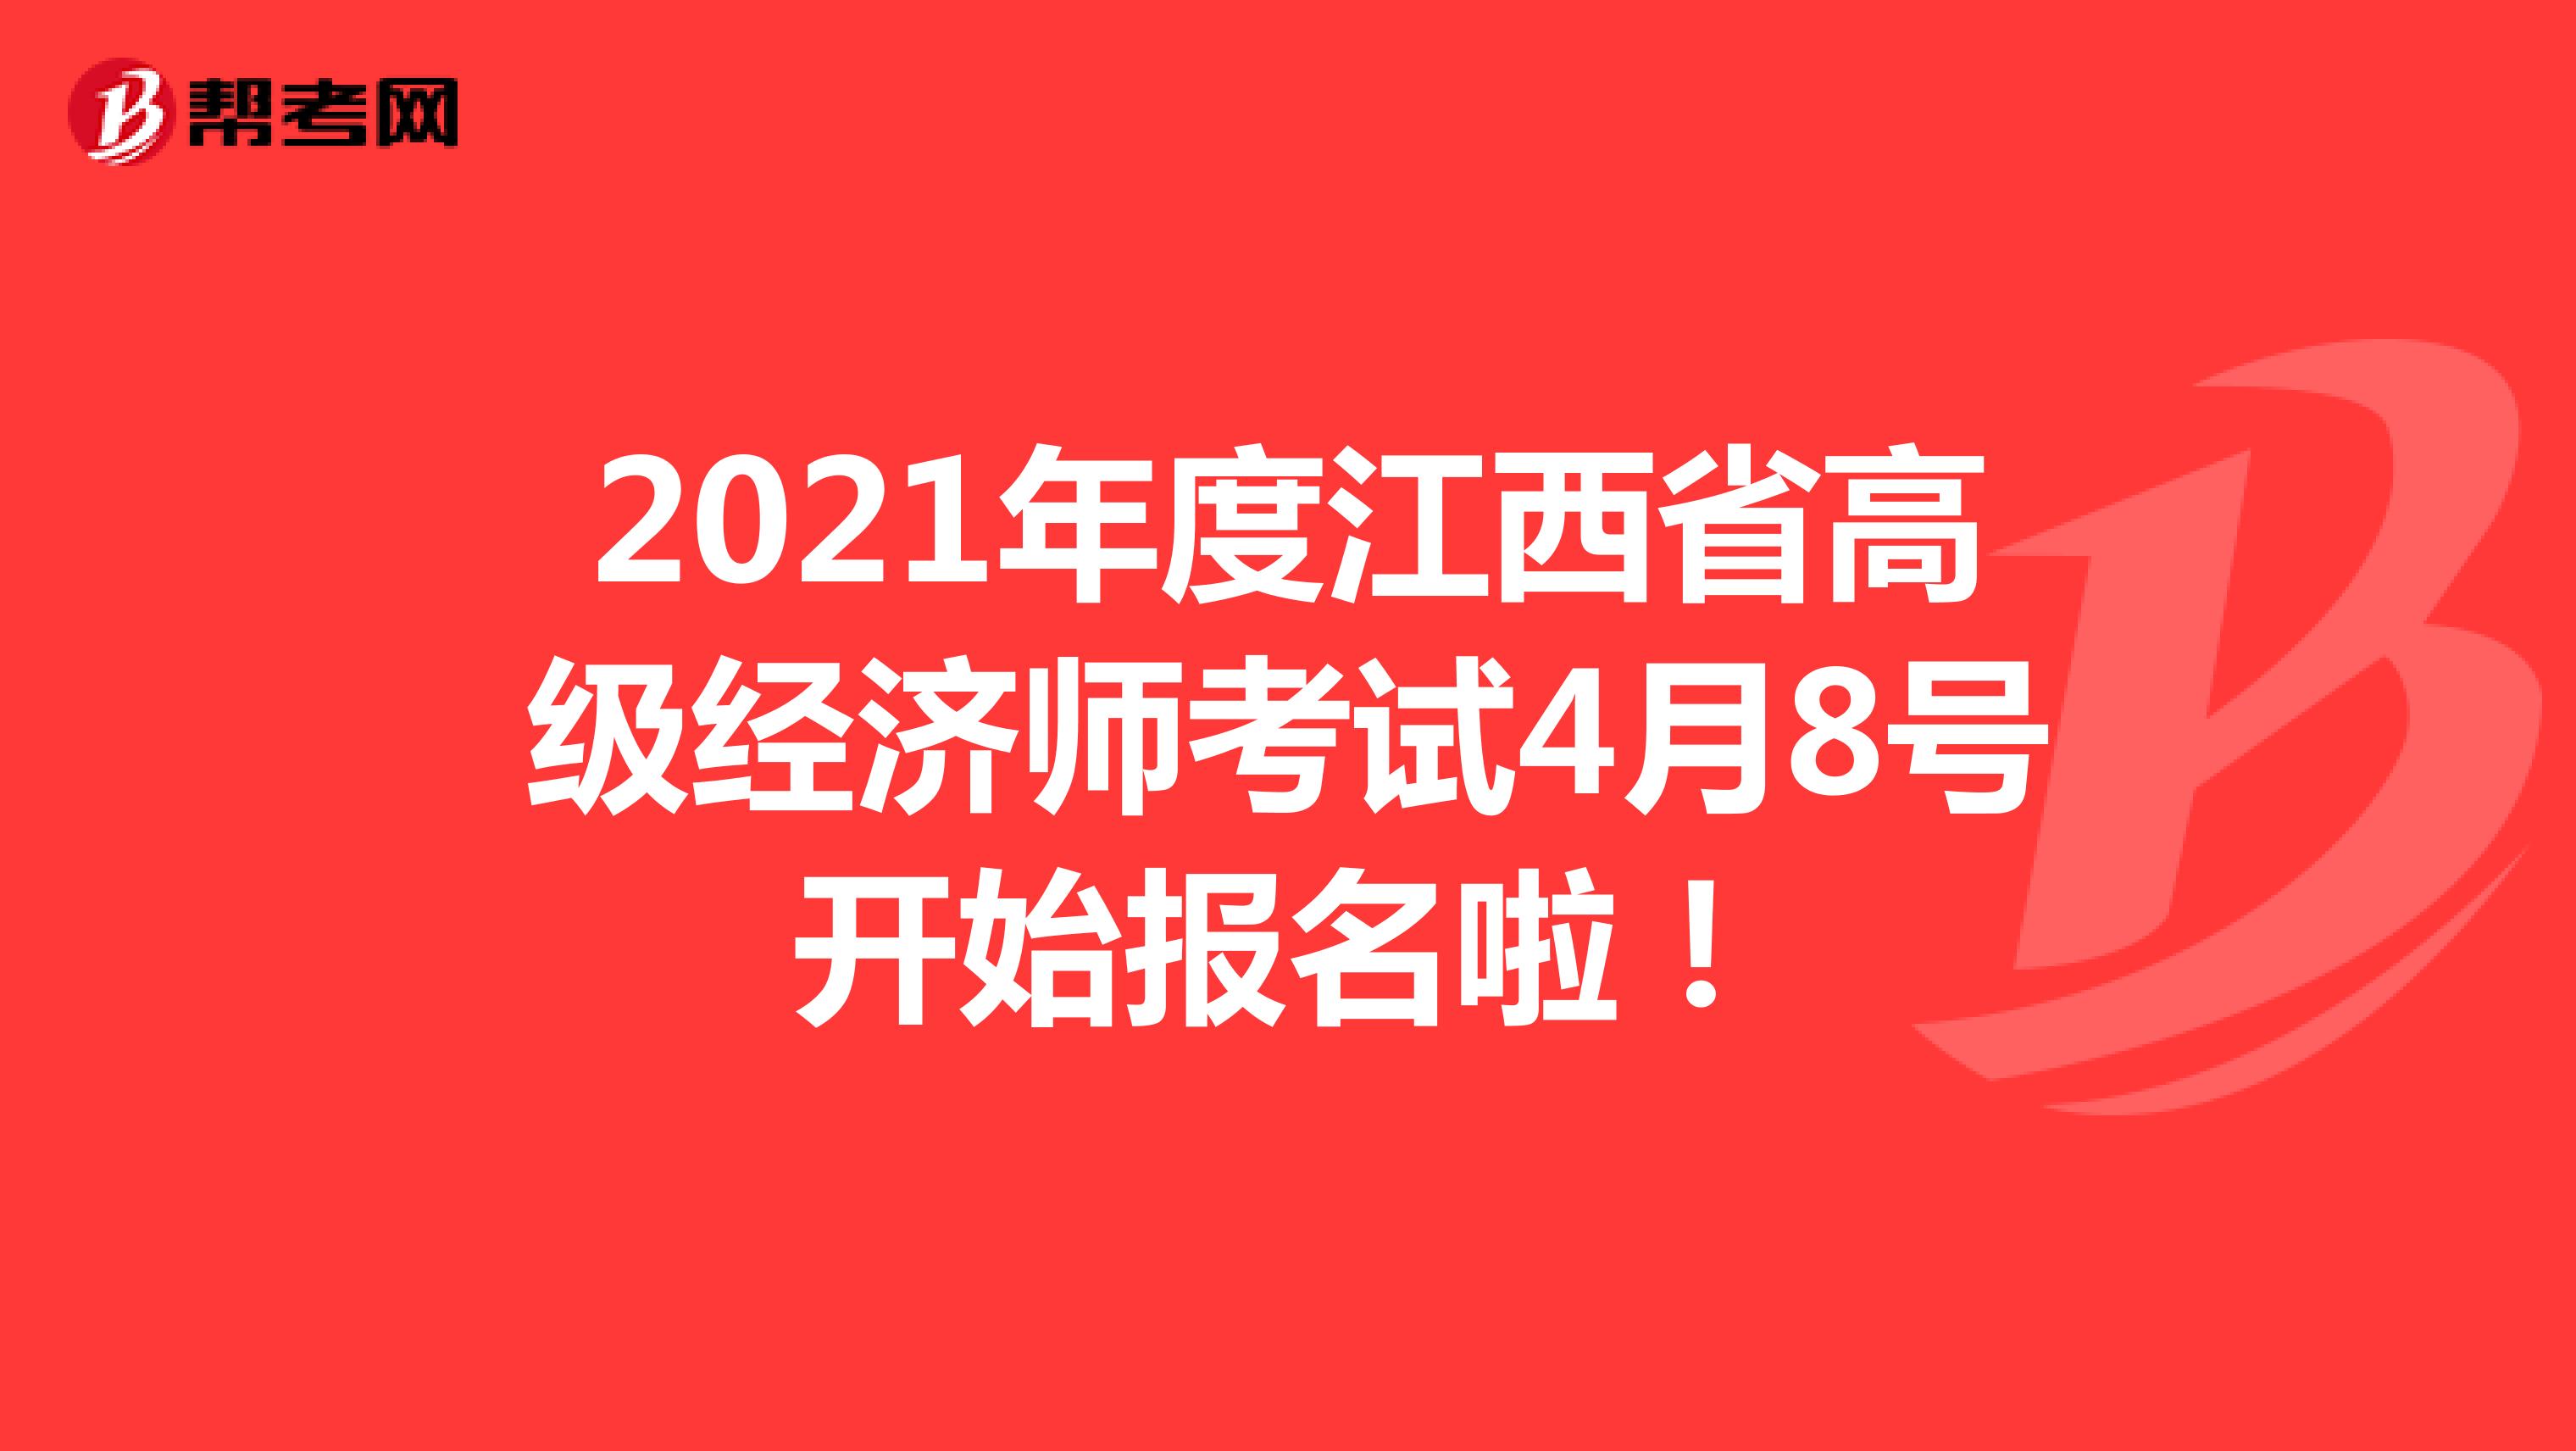 2021年度江西省高级经济师考试4月8号开始报名啦！